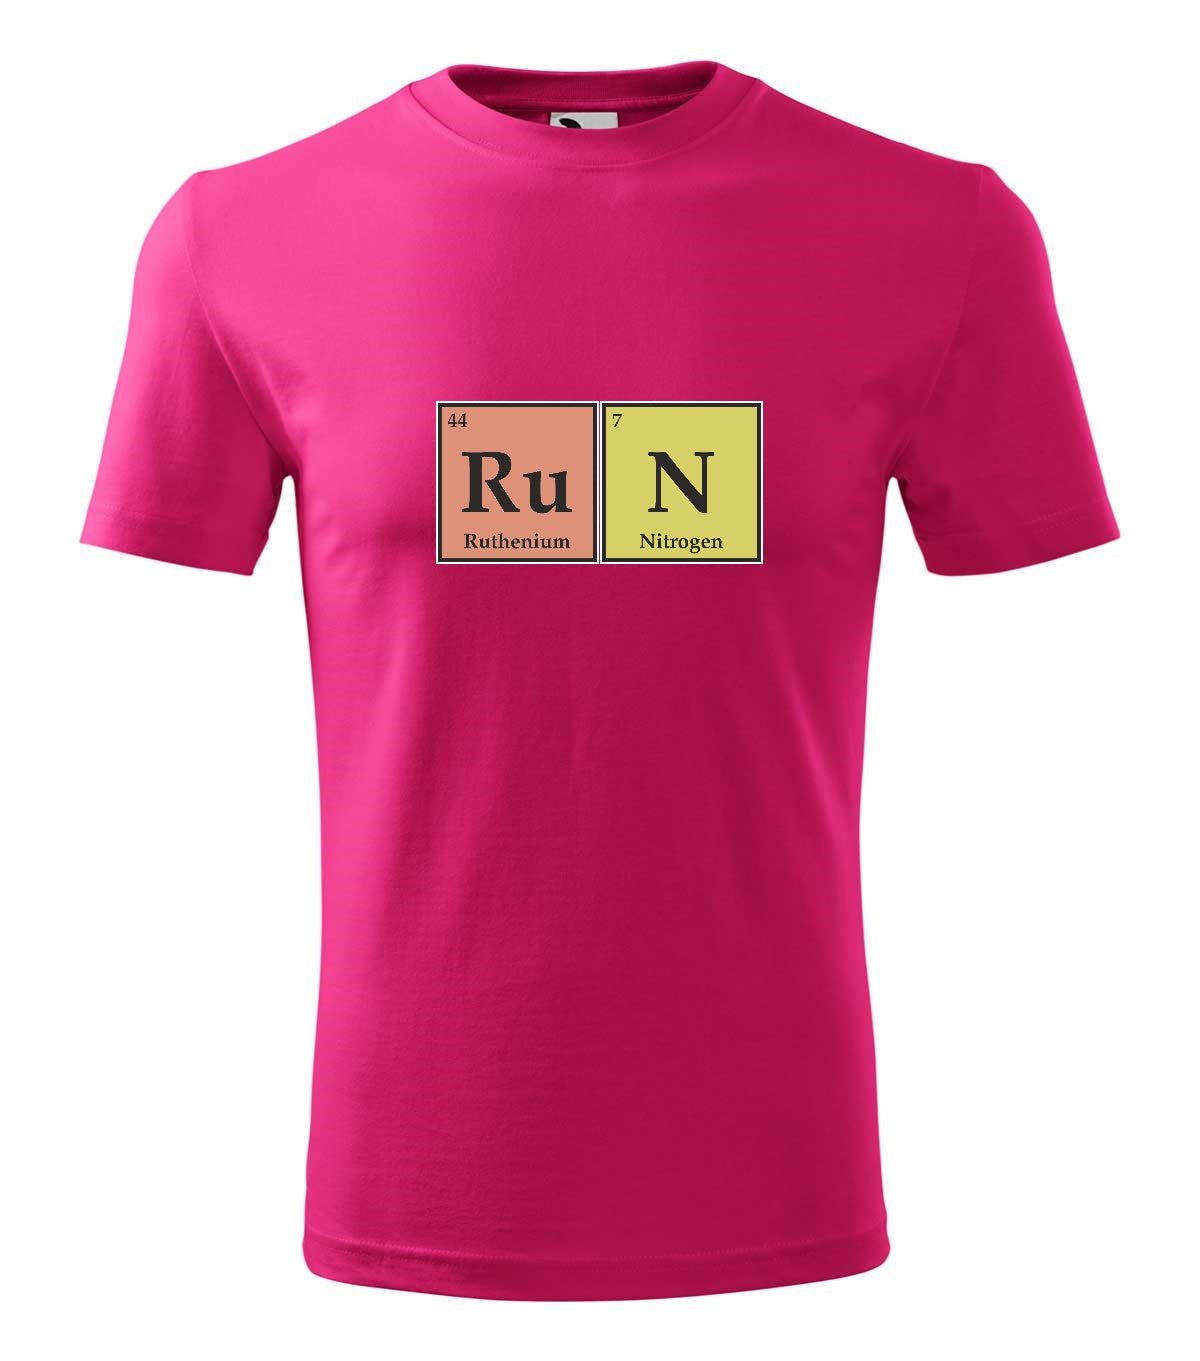 RuN kémia férfi technikai póló